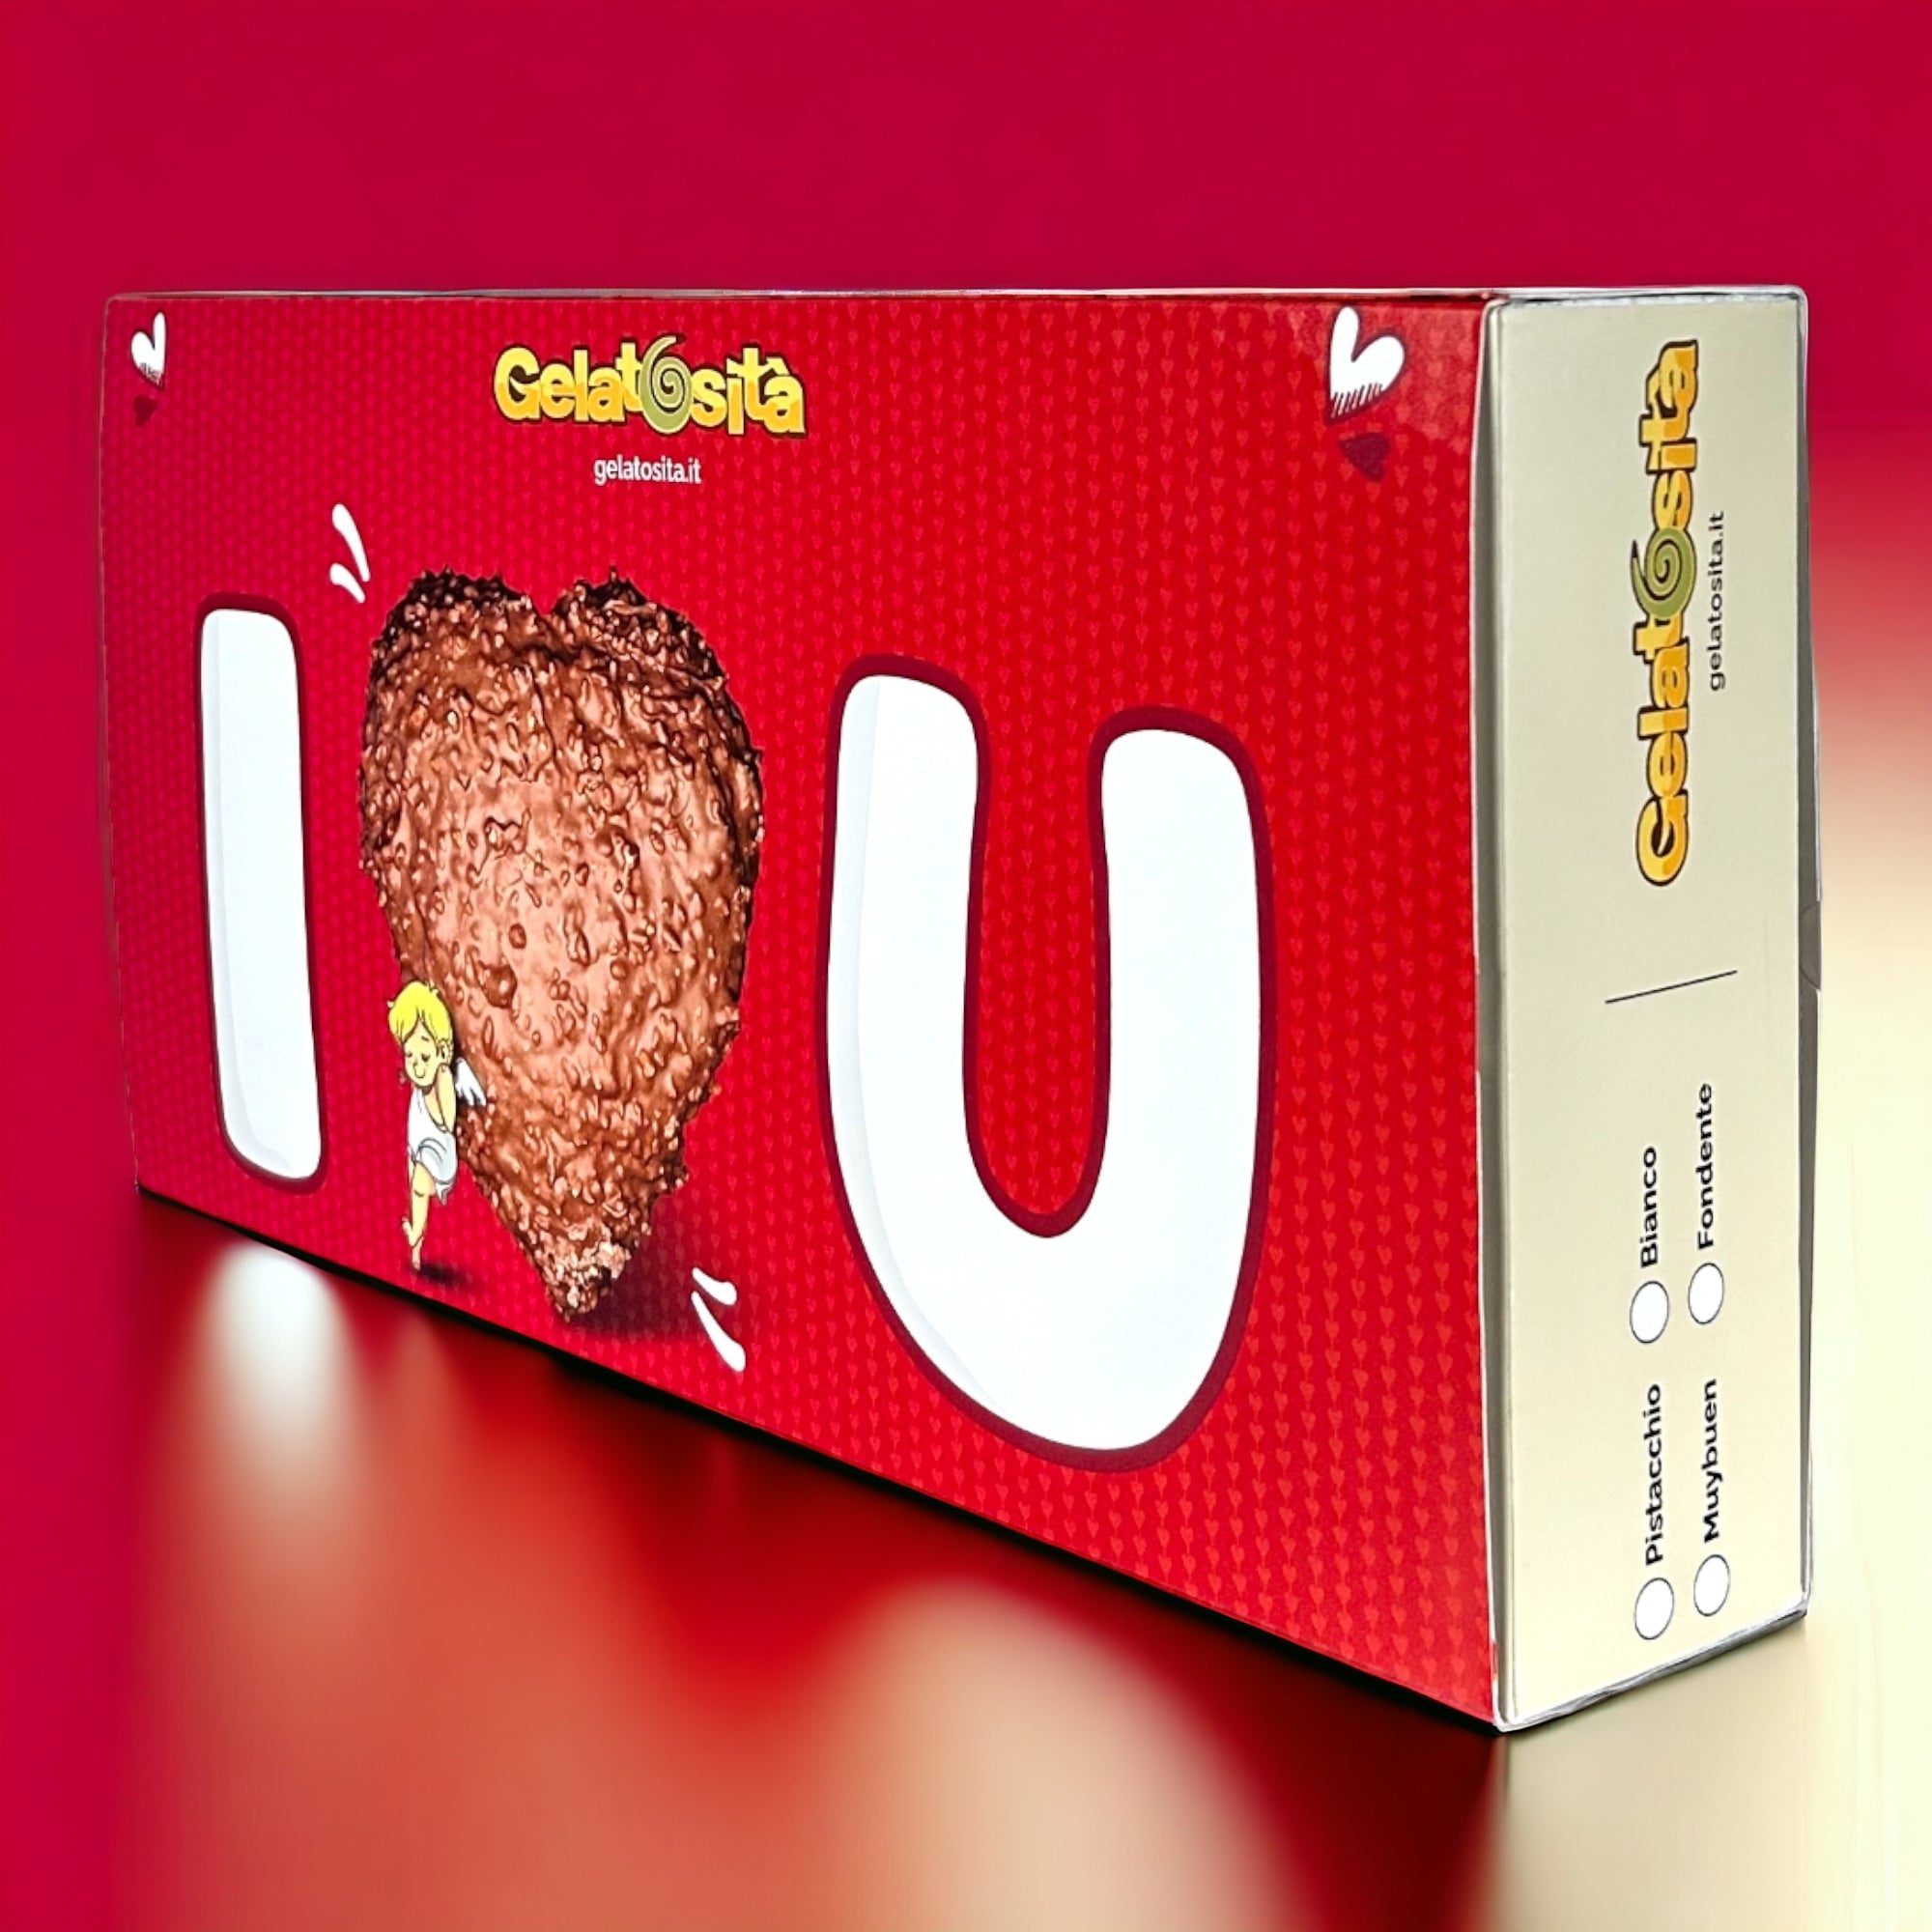 BOX MAMMA, I-LOVE-YOU! Cuore Fondente ripieno Crema Fondente + 5 creme + 2 cioccolatini + rosa e dedica (Ed. Limitata)